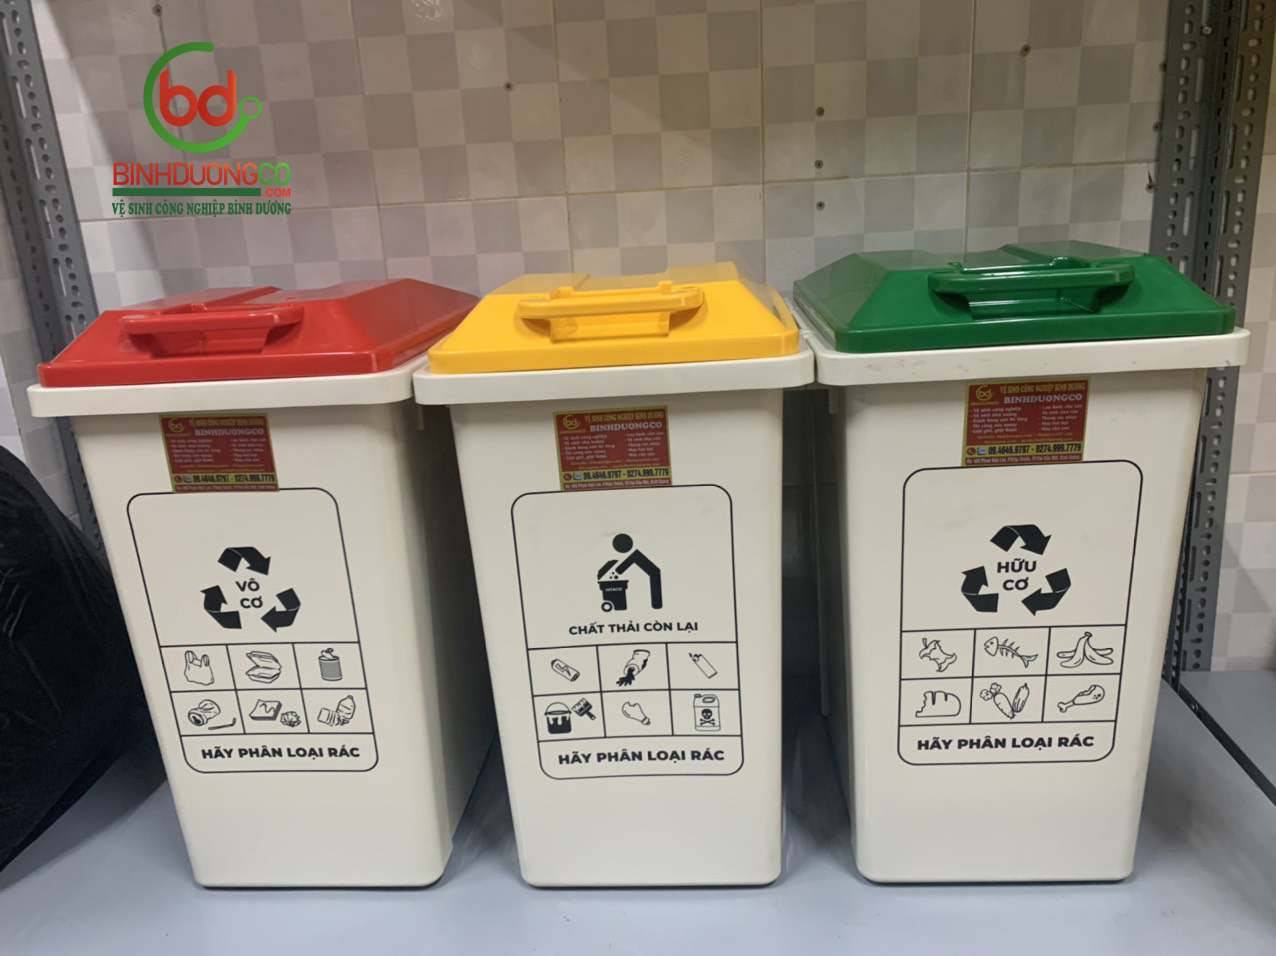 Ưu điểm nổi trội của thùng rác BinhDuongCo